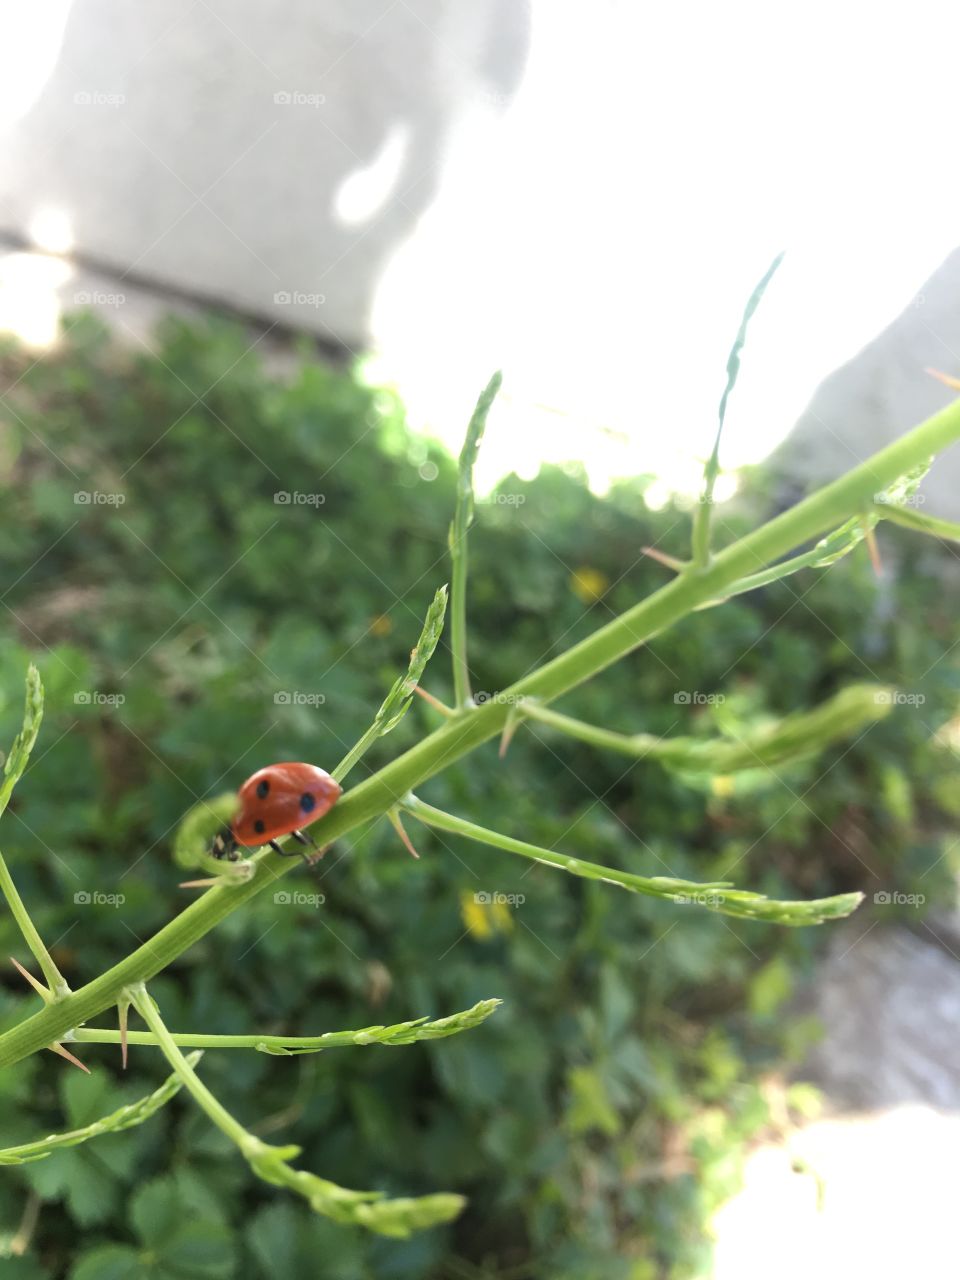 Ladybug is minimalist